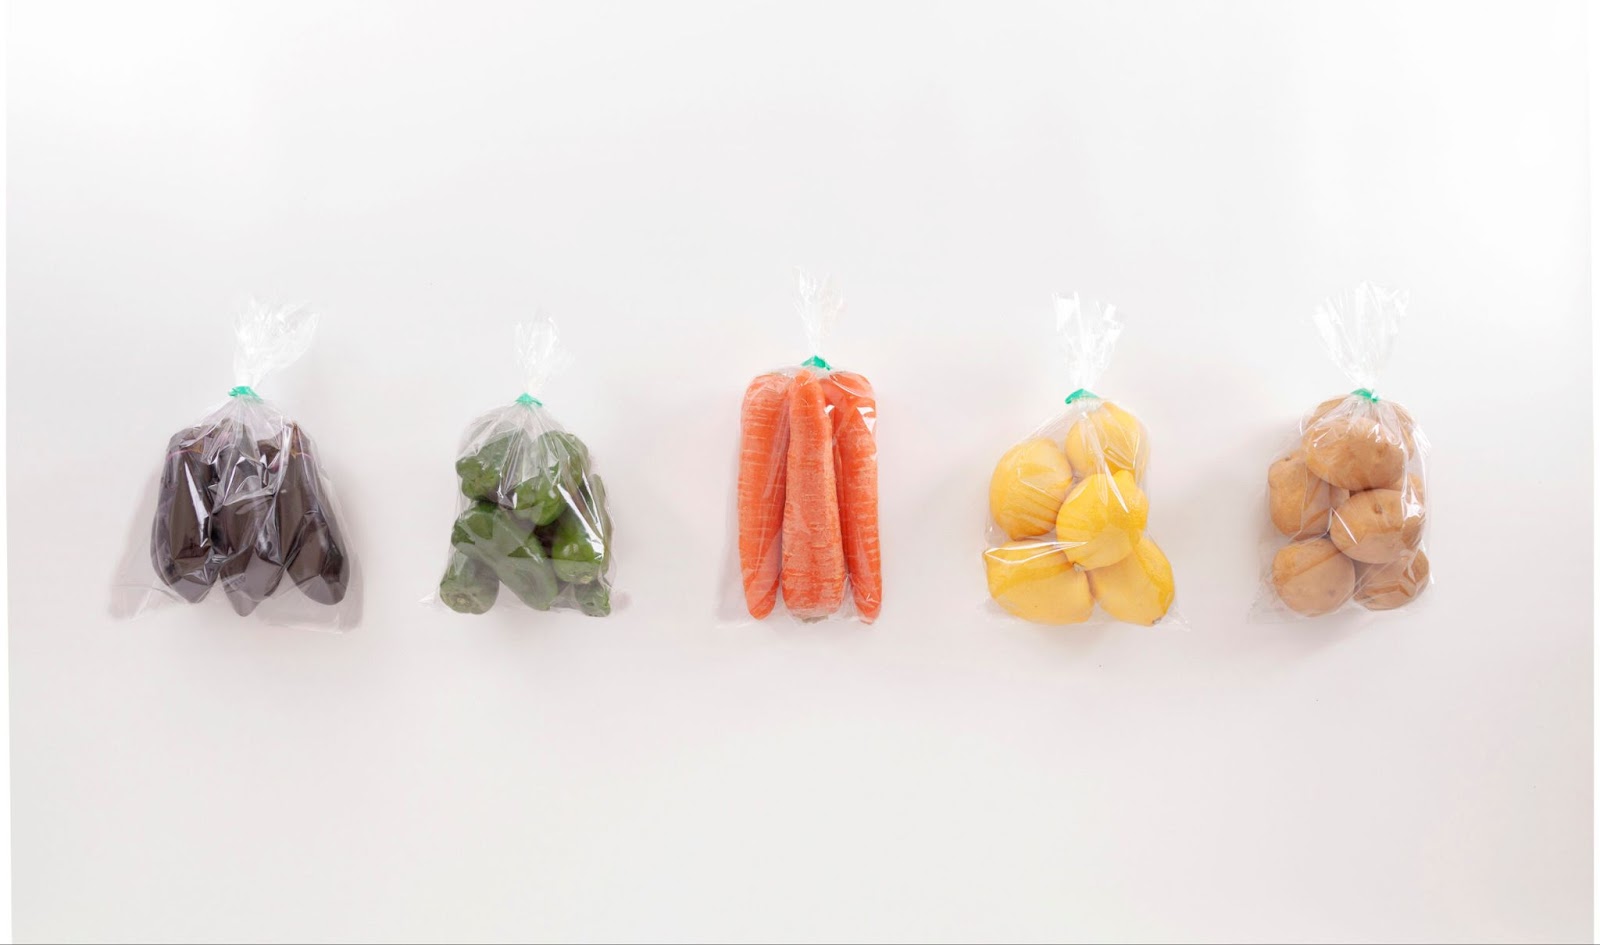 野菜に使える包装資材を6つご紹介。選び方のポイントも解説します。